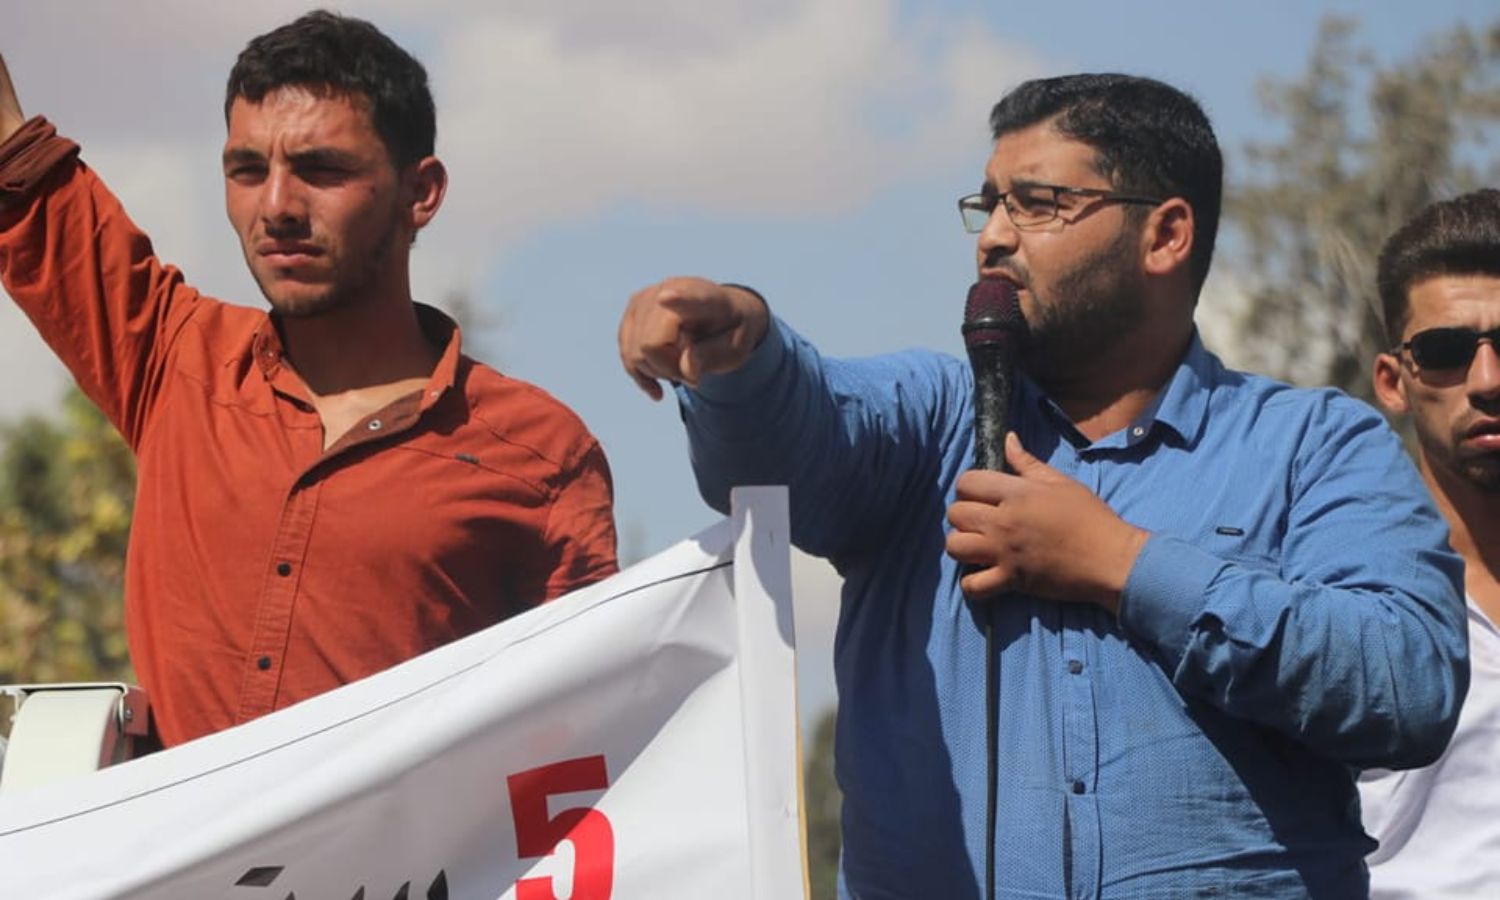 الناشط الإعلامي محمد عبد اللطيف (أبو غنوم) خلال إحدى المظاهرات بريف حلب- 25 من أيلول 2022 (محمد أبو غنوم/ فيس بوك)